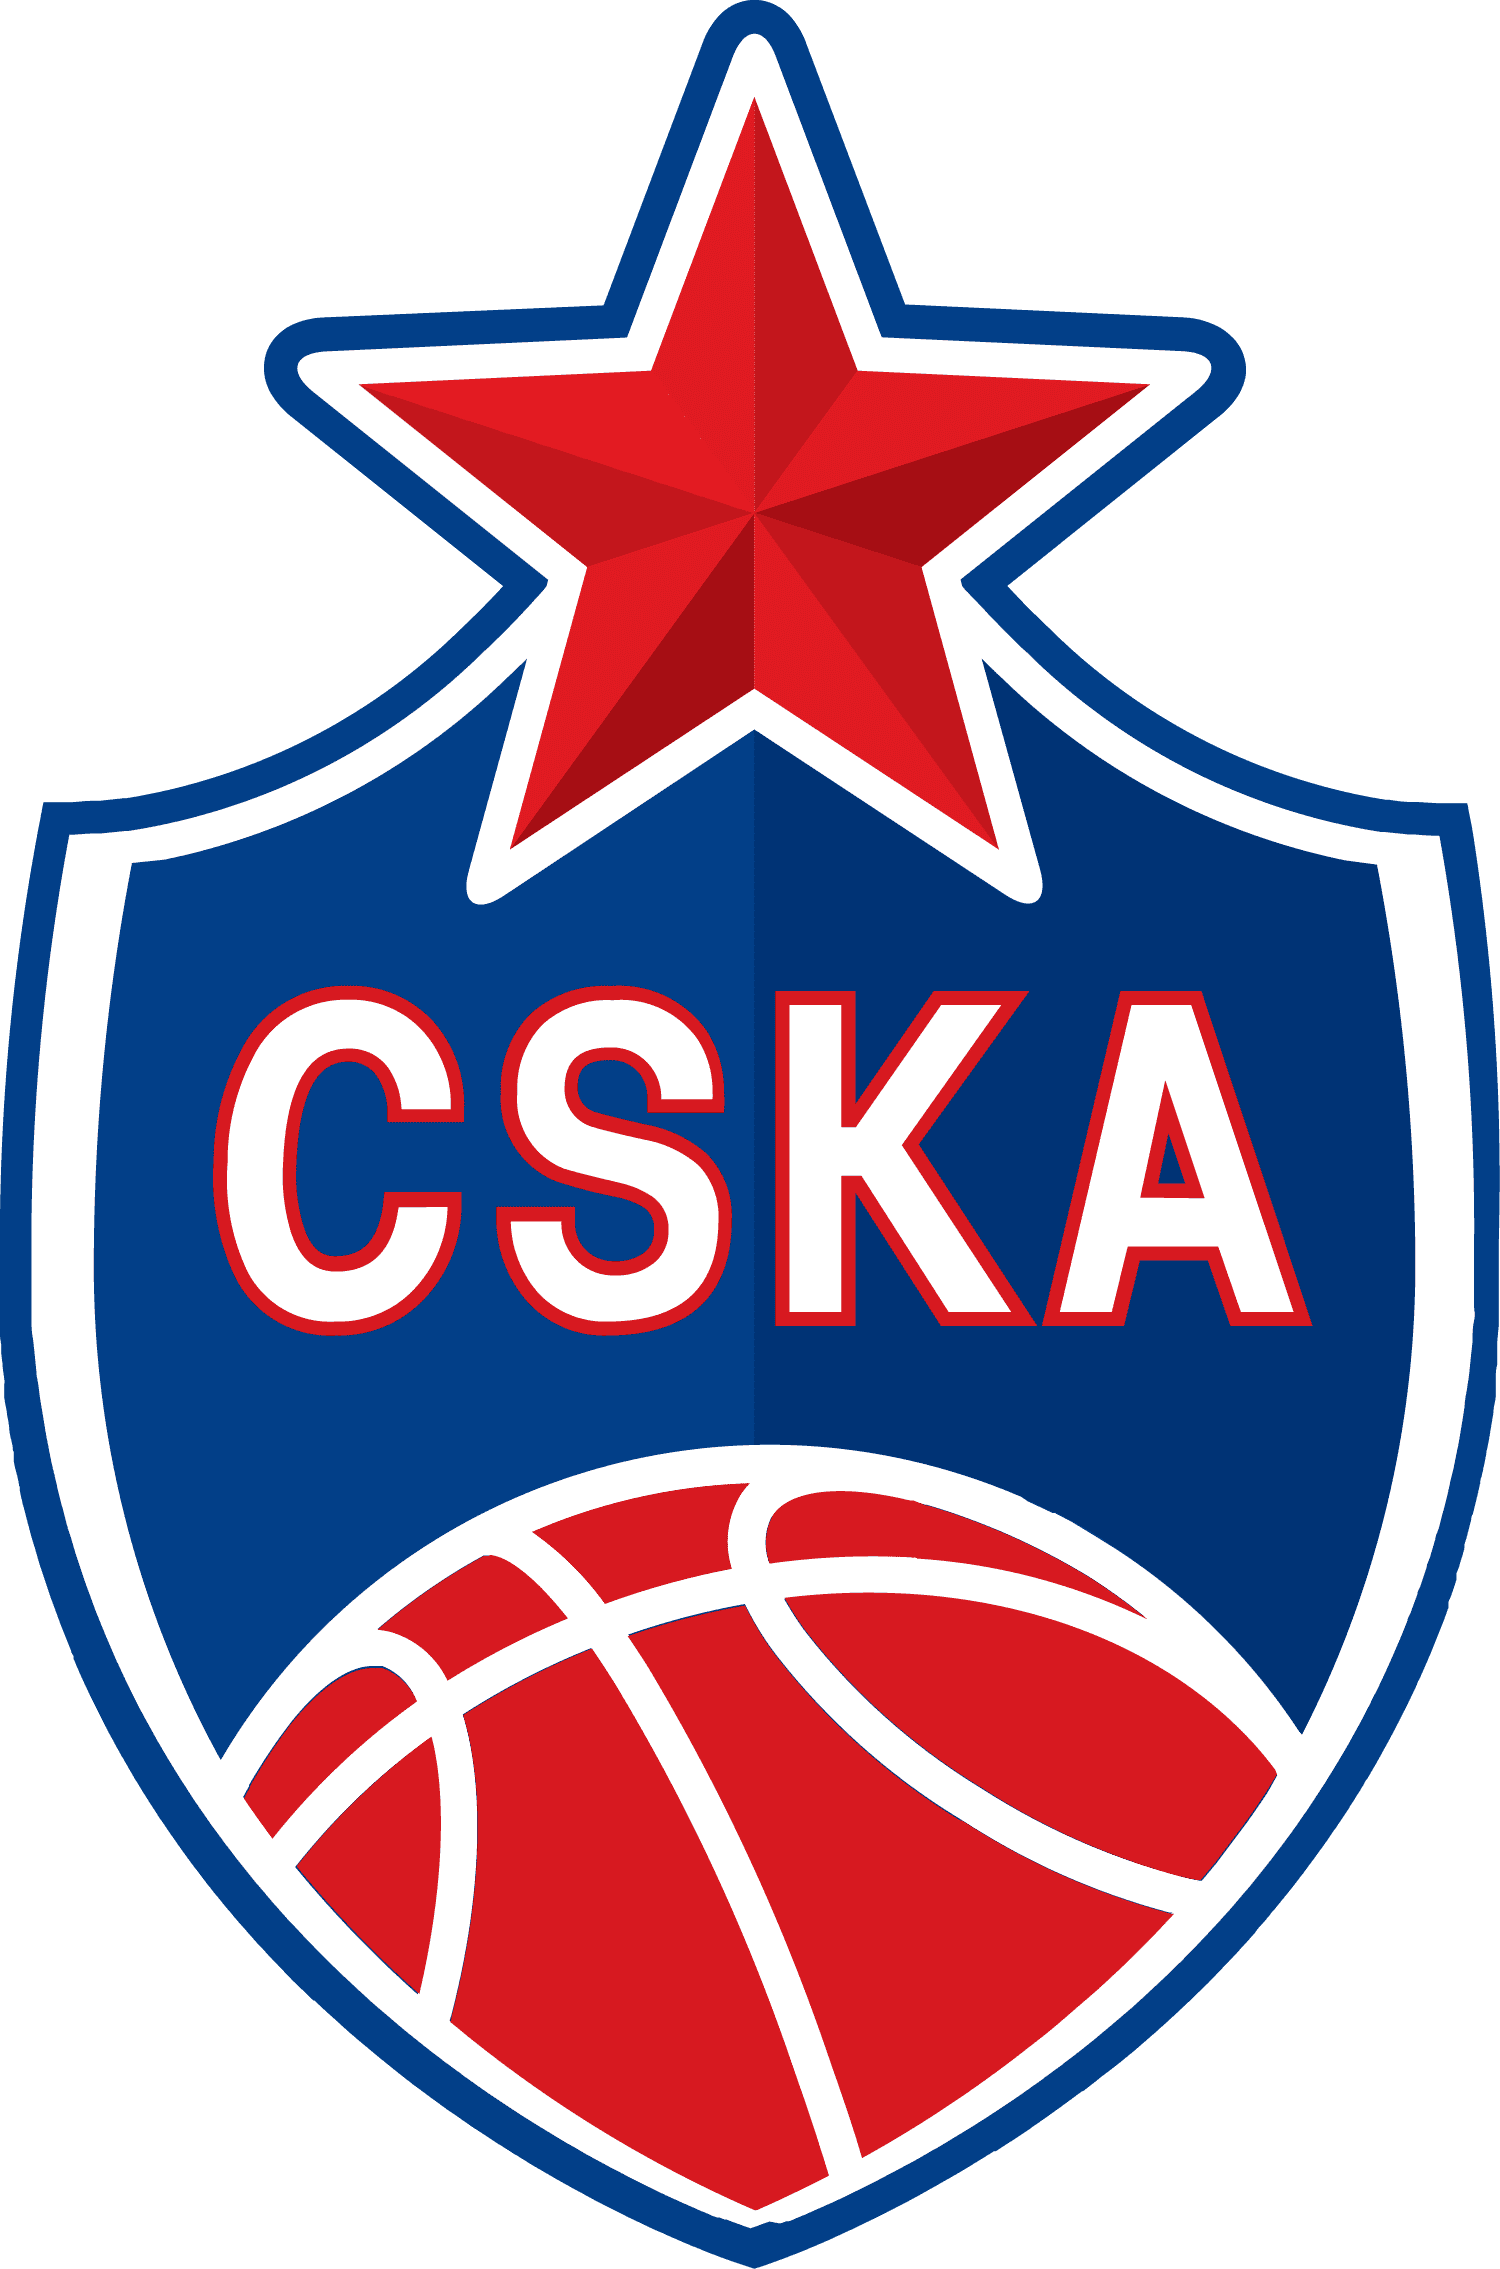 Equipo inscrito y validado para la Temporada 21/22 y que por ello ha sido premiado con 2 entradas para asistir en directo al partido de Baloncesto de Euroliga, entre el Baskonia y CSK Moscow.